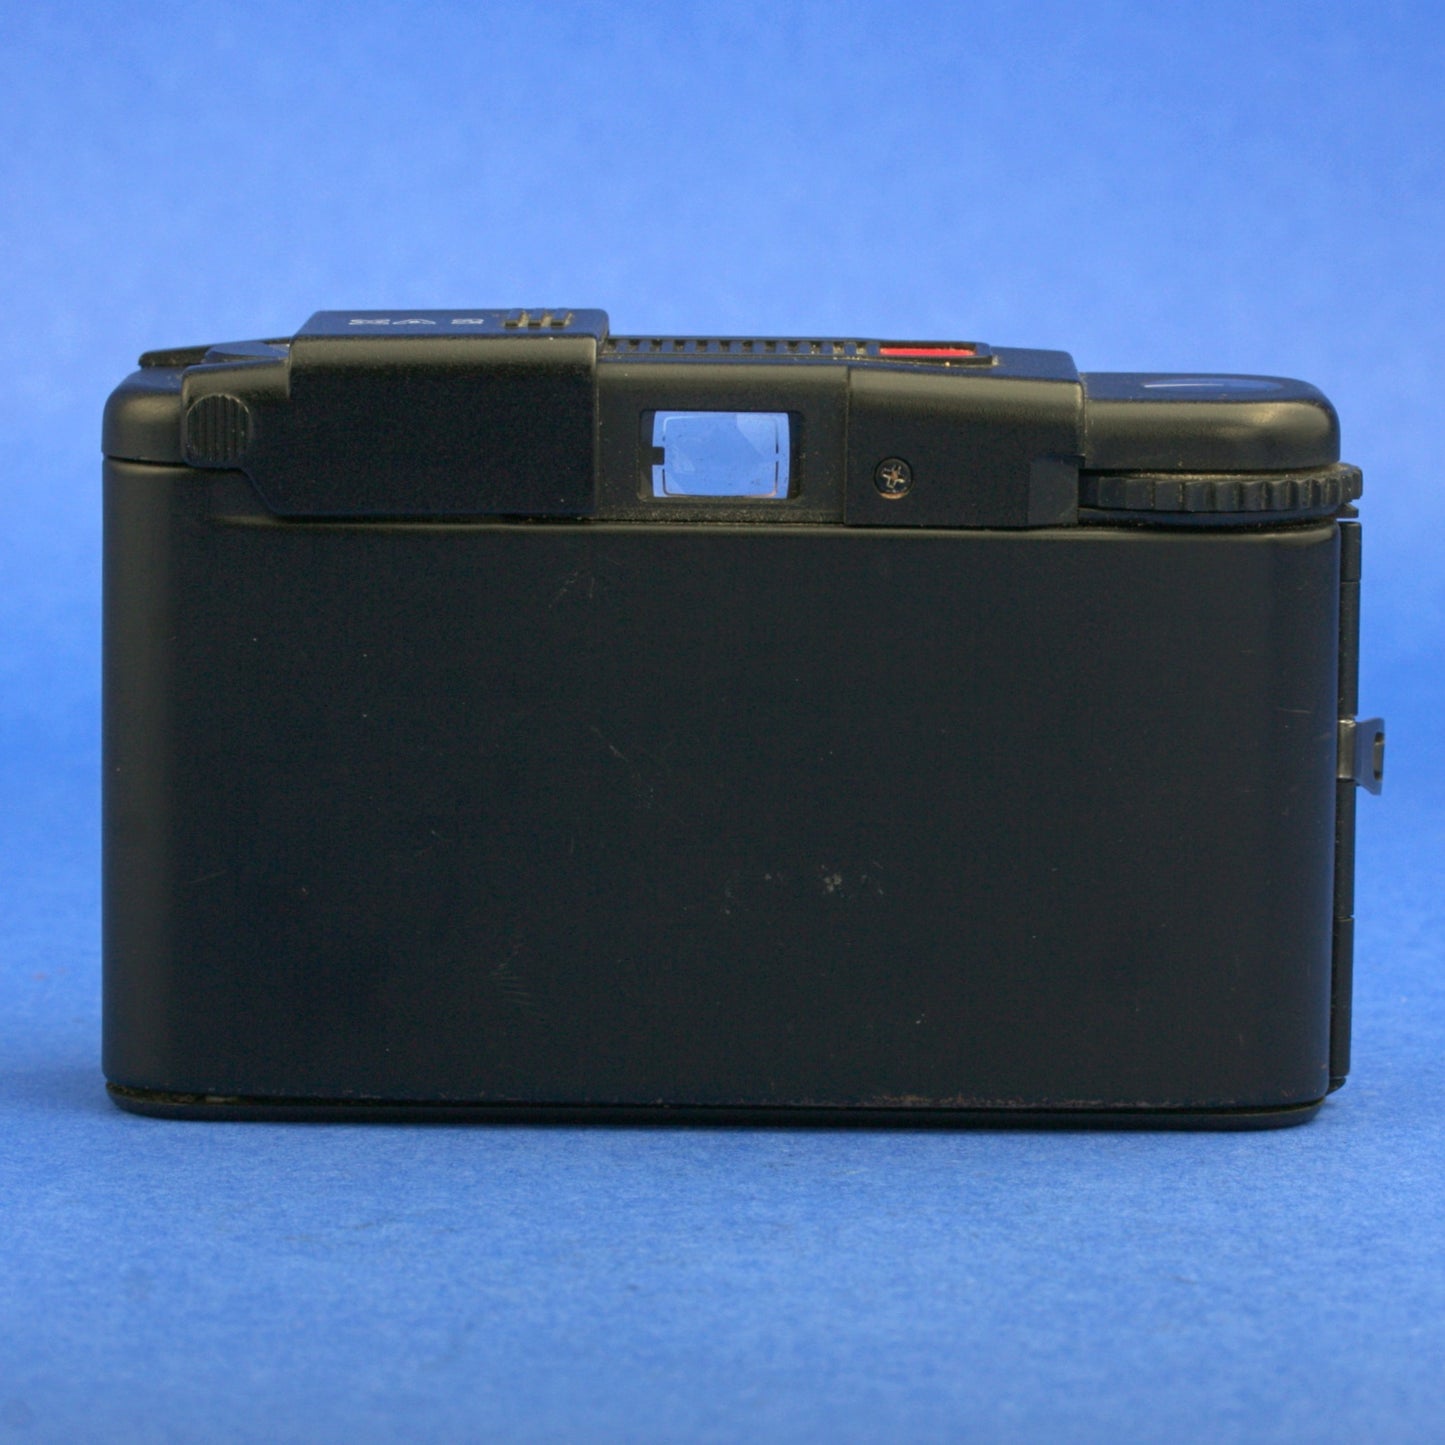 Olympus XA2 Film Camera